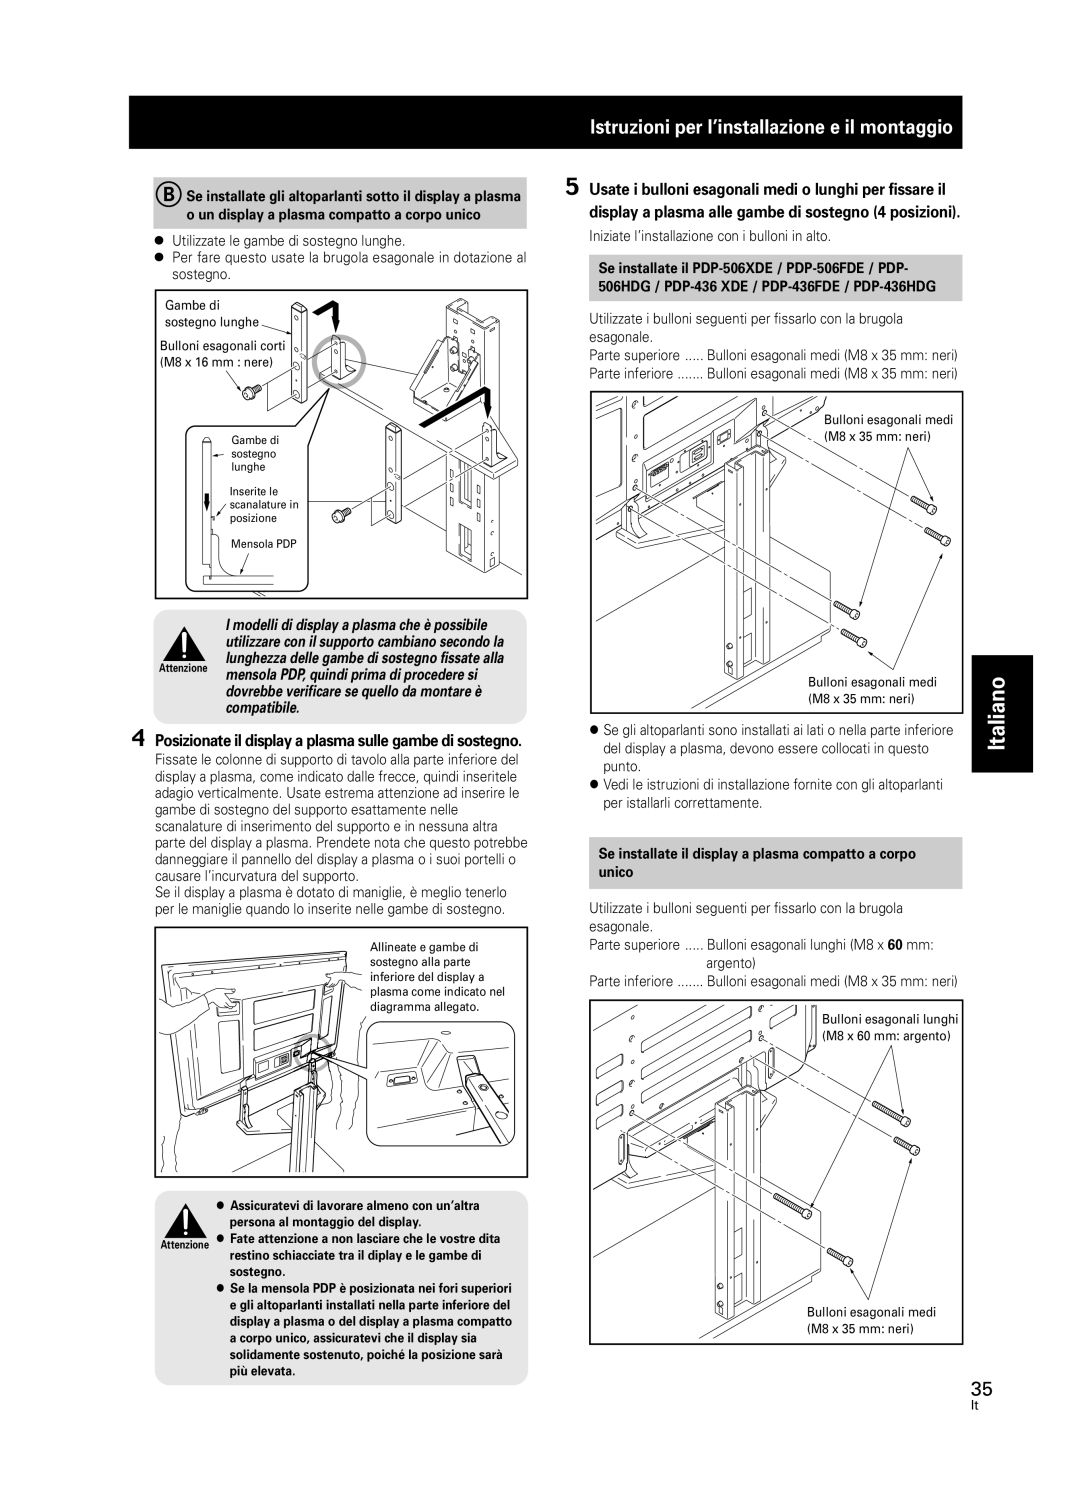 Pioneer PDK-FS05 manual Istruzioni per l’installazione e il montaggio, compatibile, Italiano 